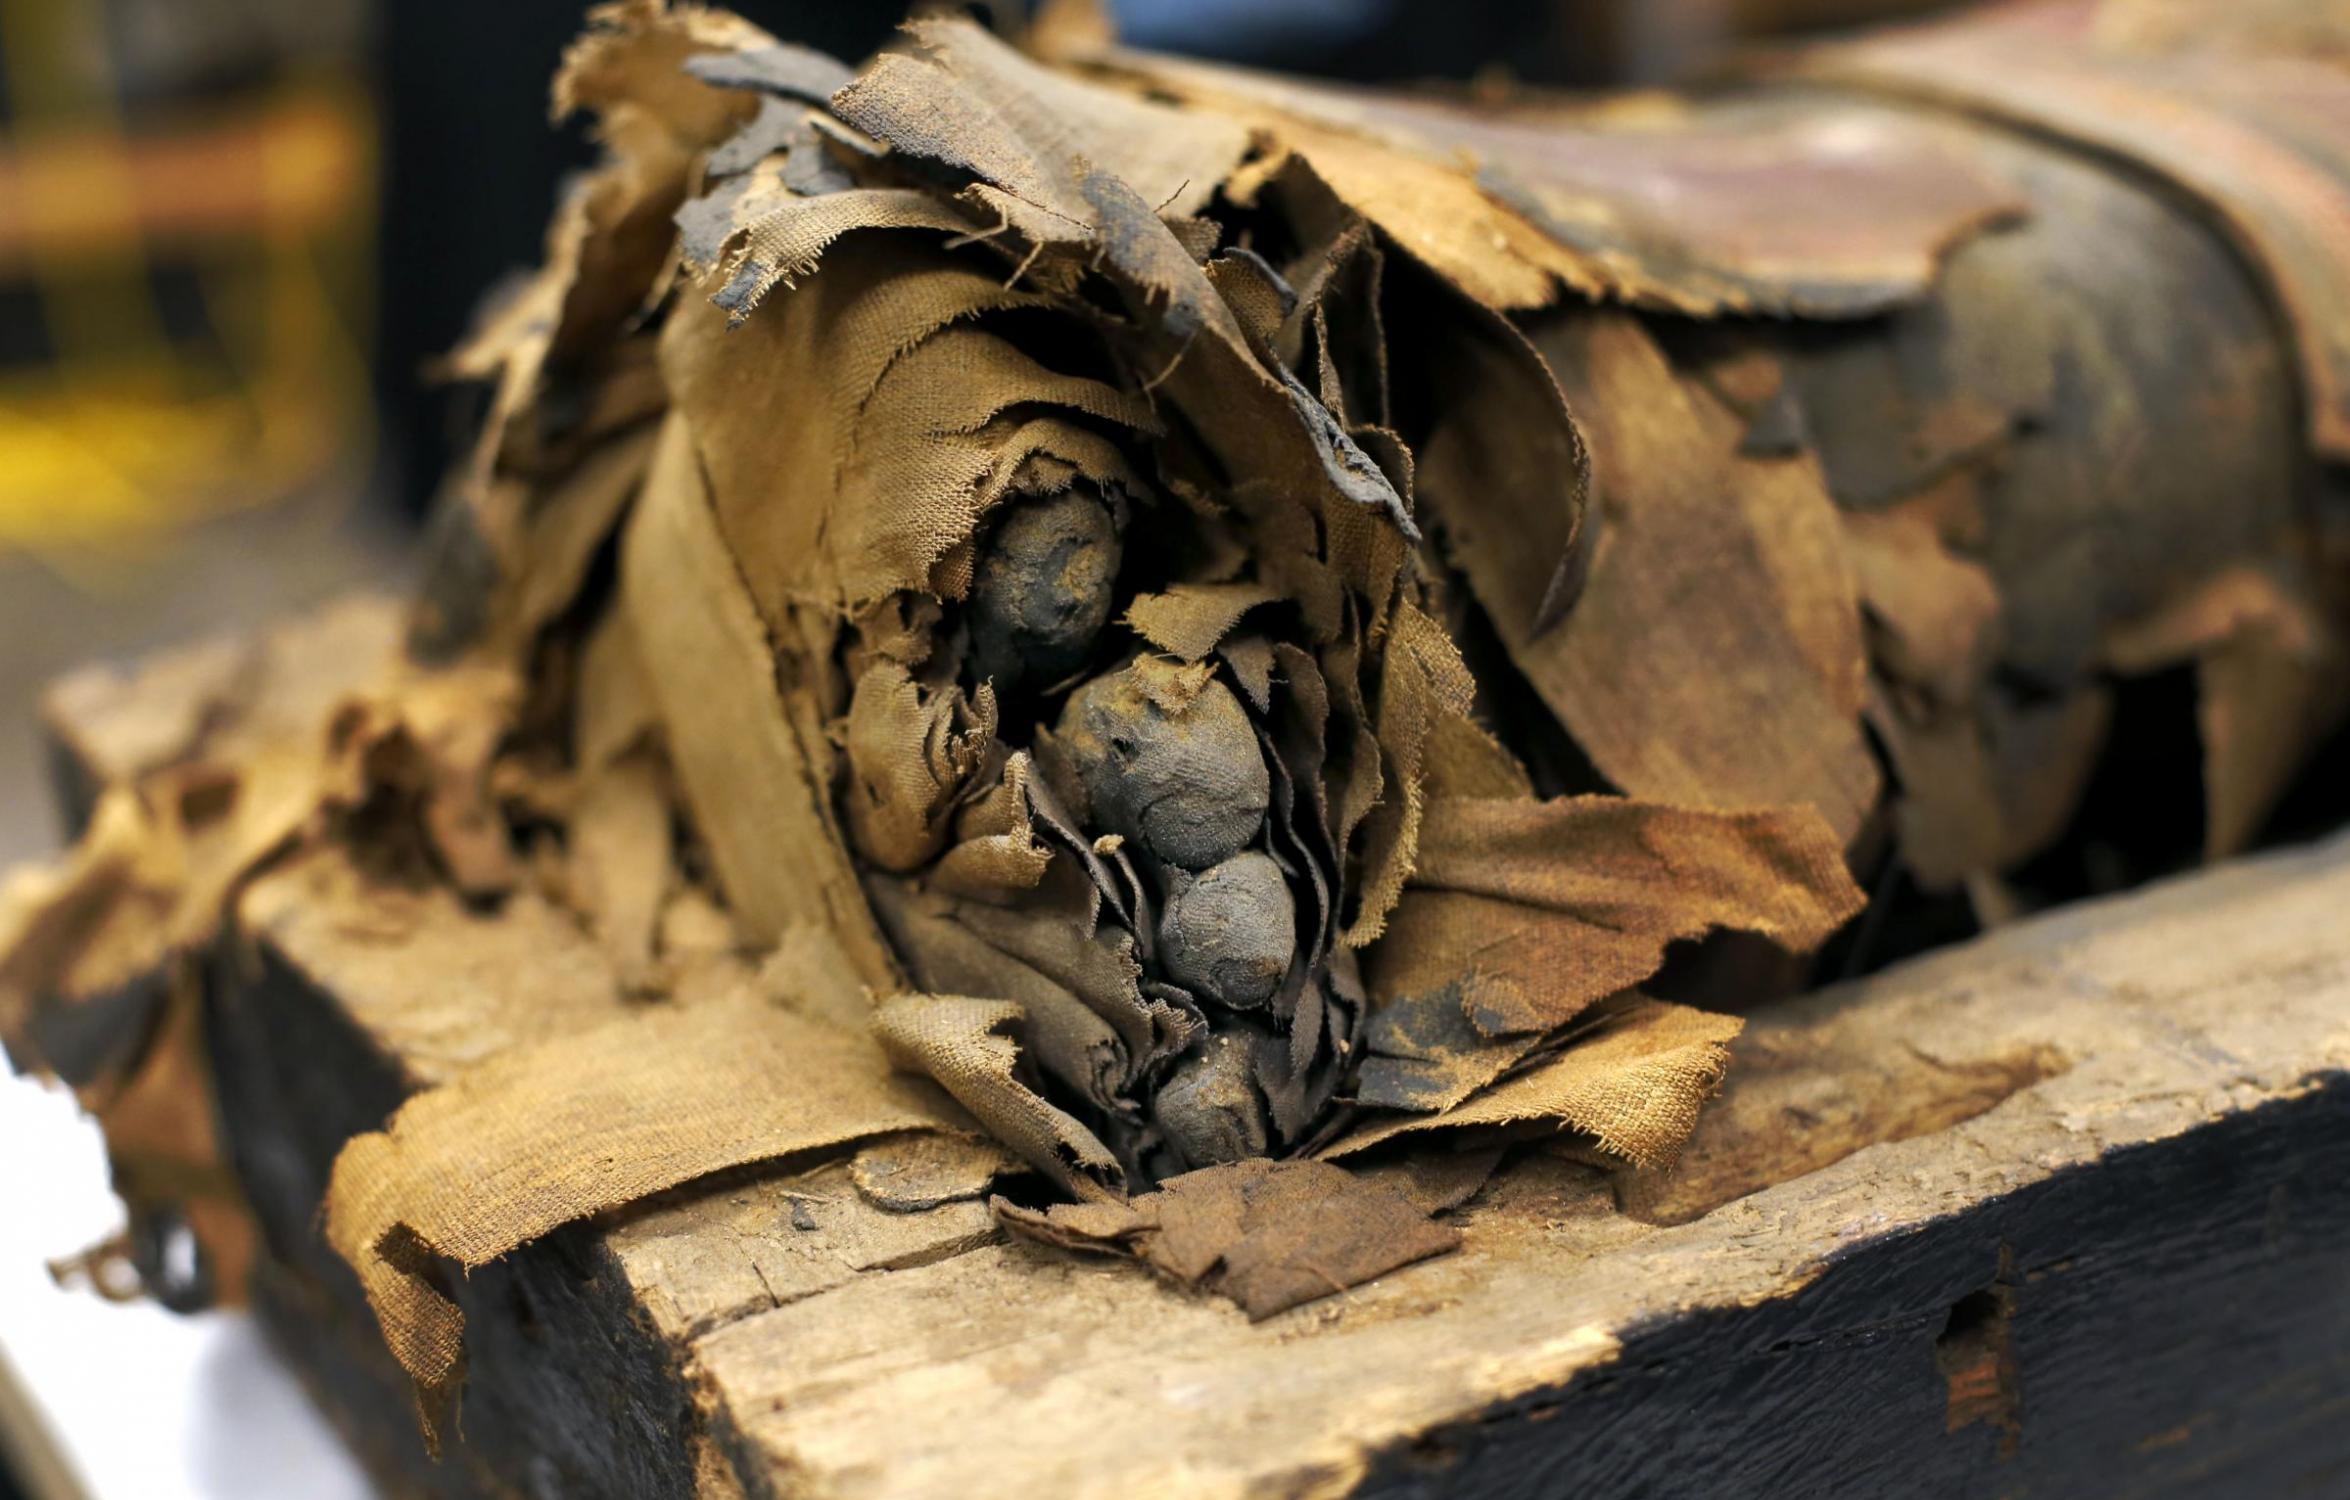 美国芝加哥菲尔德博物馆打开“祭司之子”木乃伊棺材